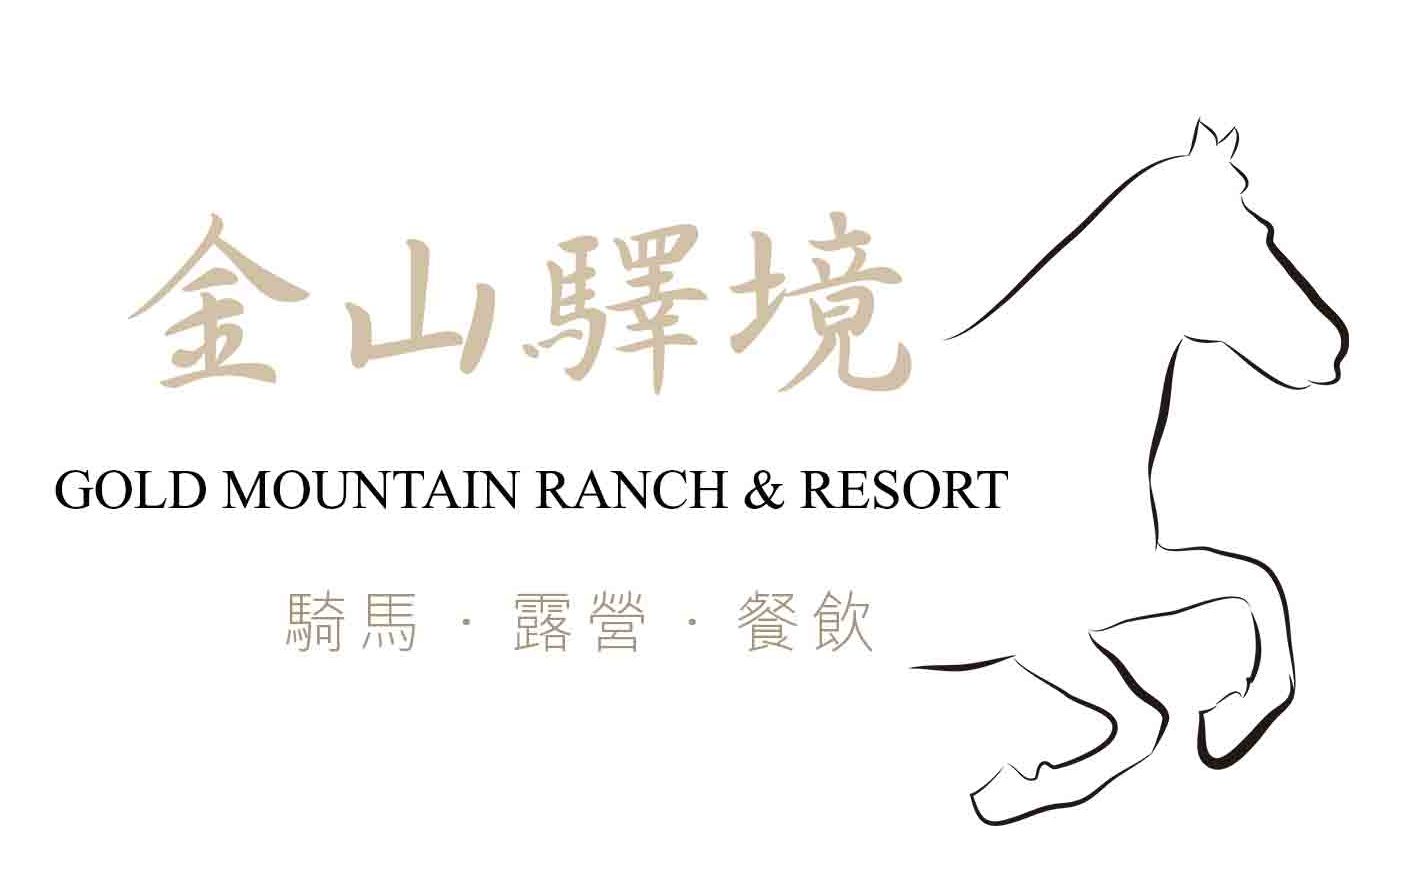 Gold Mountain Ranch & Resort |   Our Precious